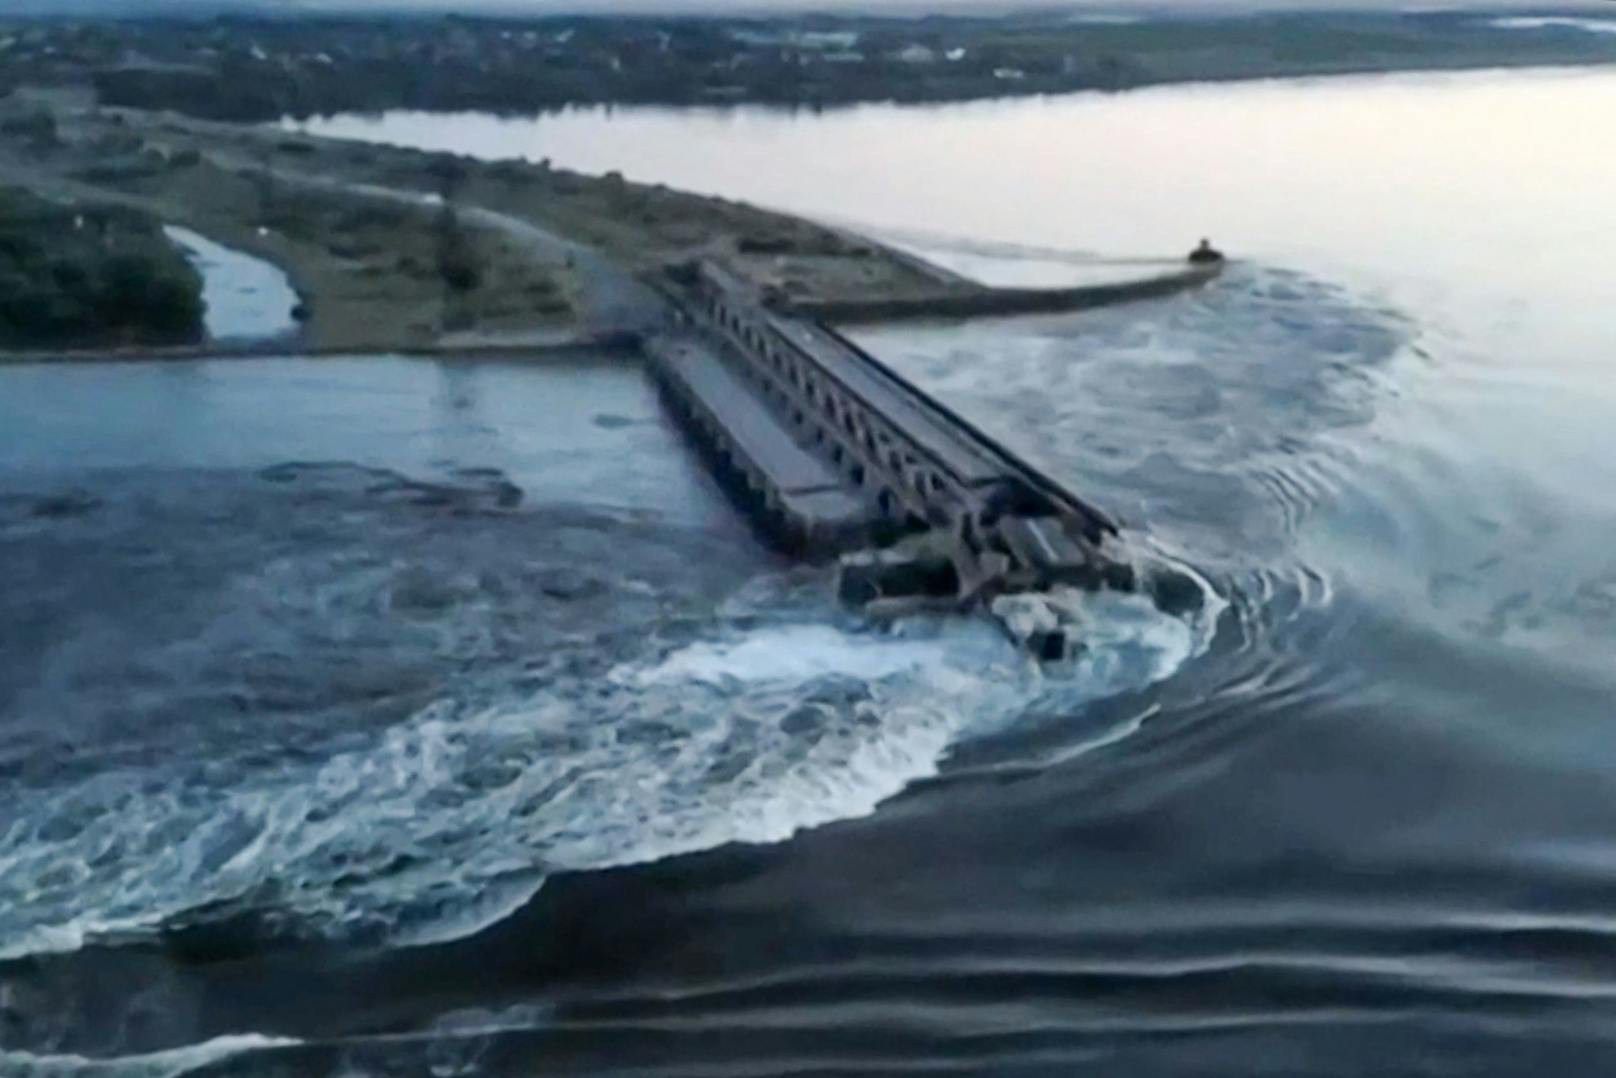 Die Ukraine beschuldigt Russland, den Damm gesprengt zu haben, um eine Gegenoffensive über den mächtigen Fluss zu verhindern.